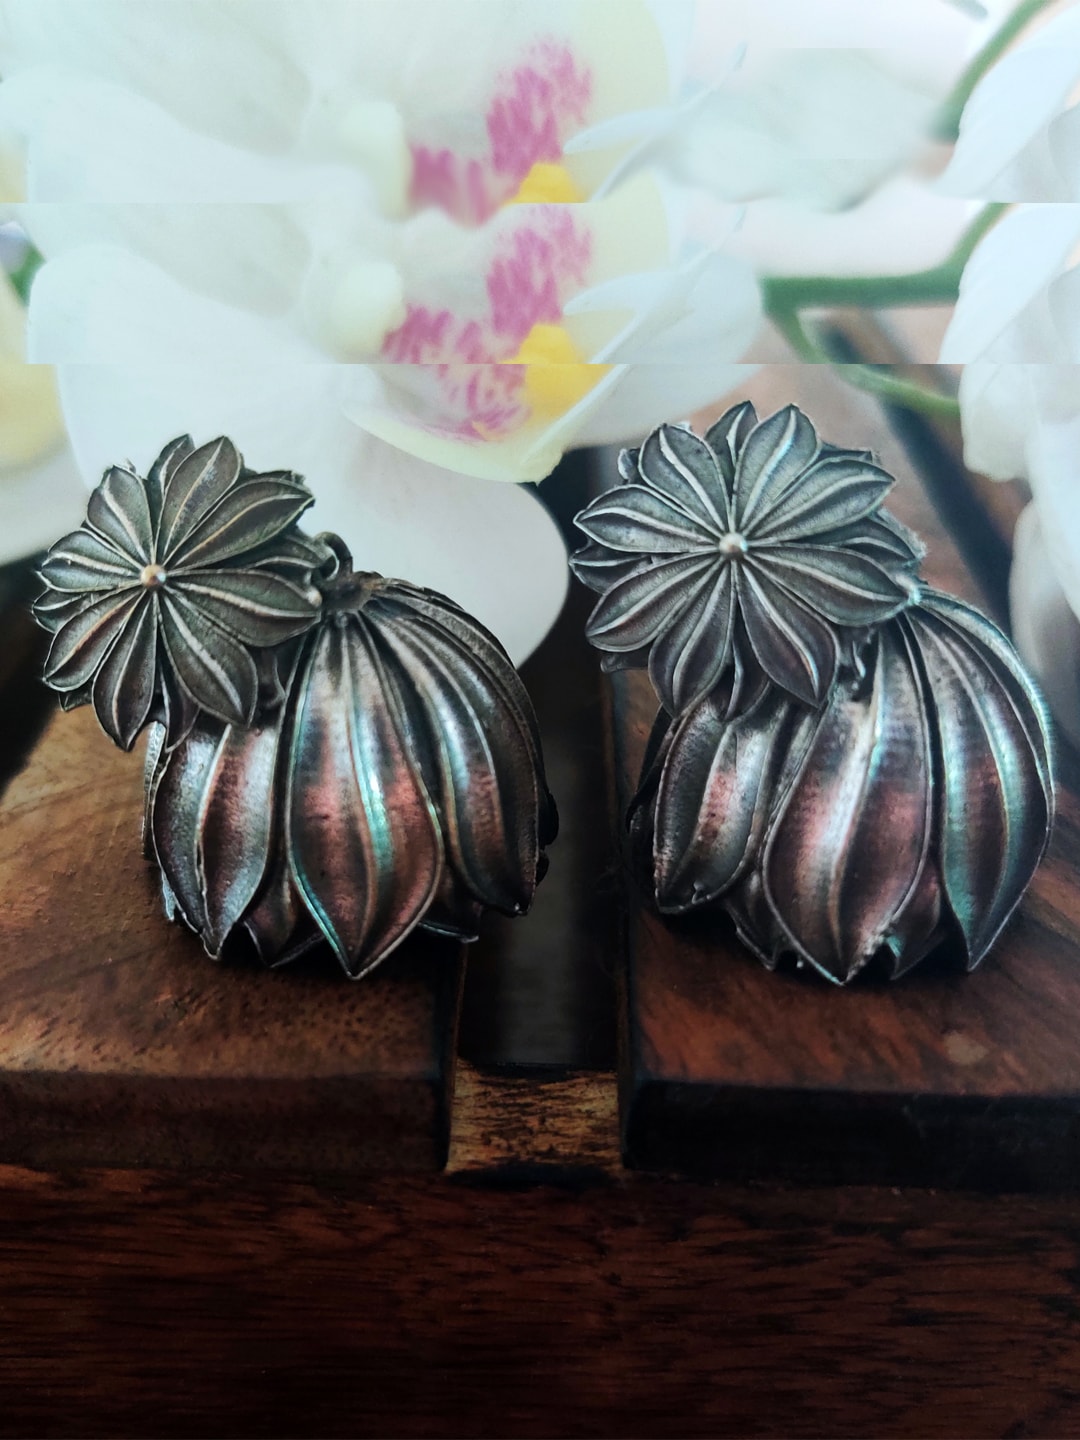 Binnis Wardrobe Silver-Toned Floral Jhumkas Earrings Price in India